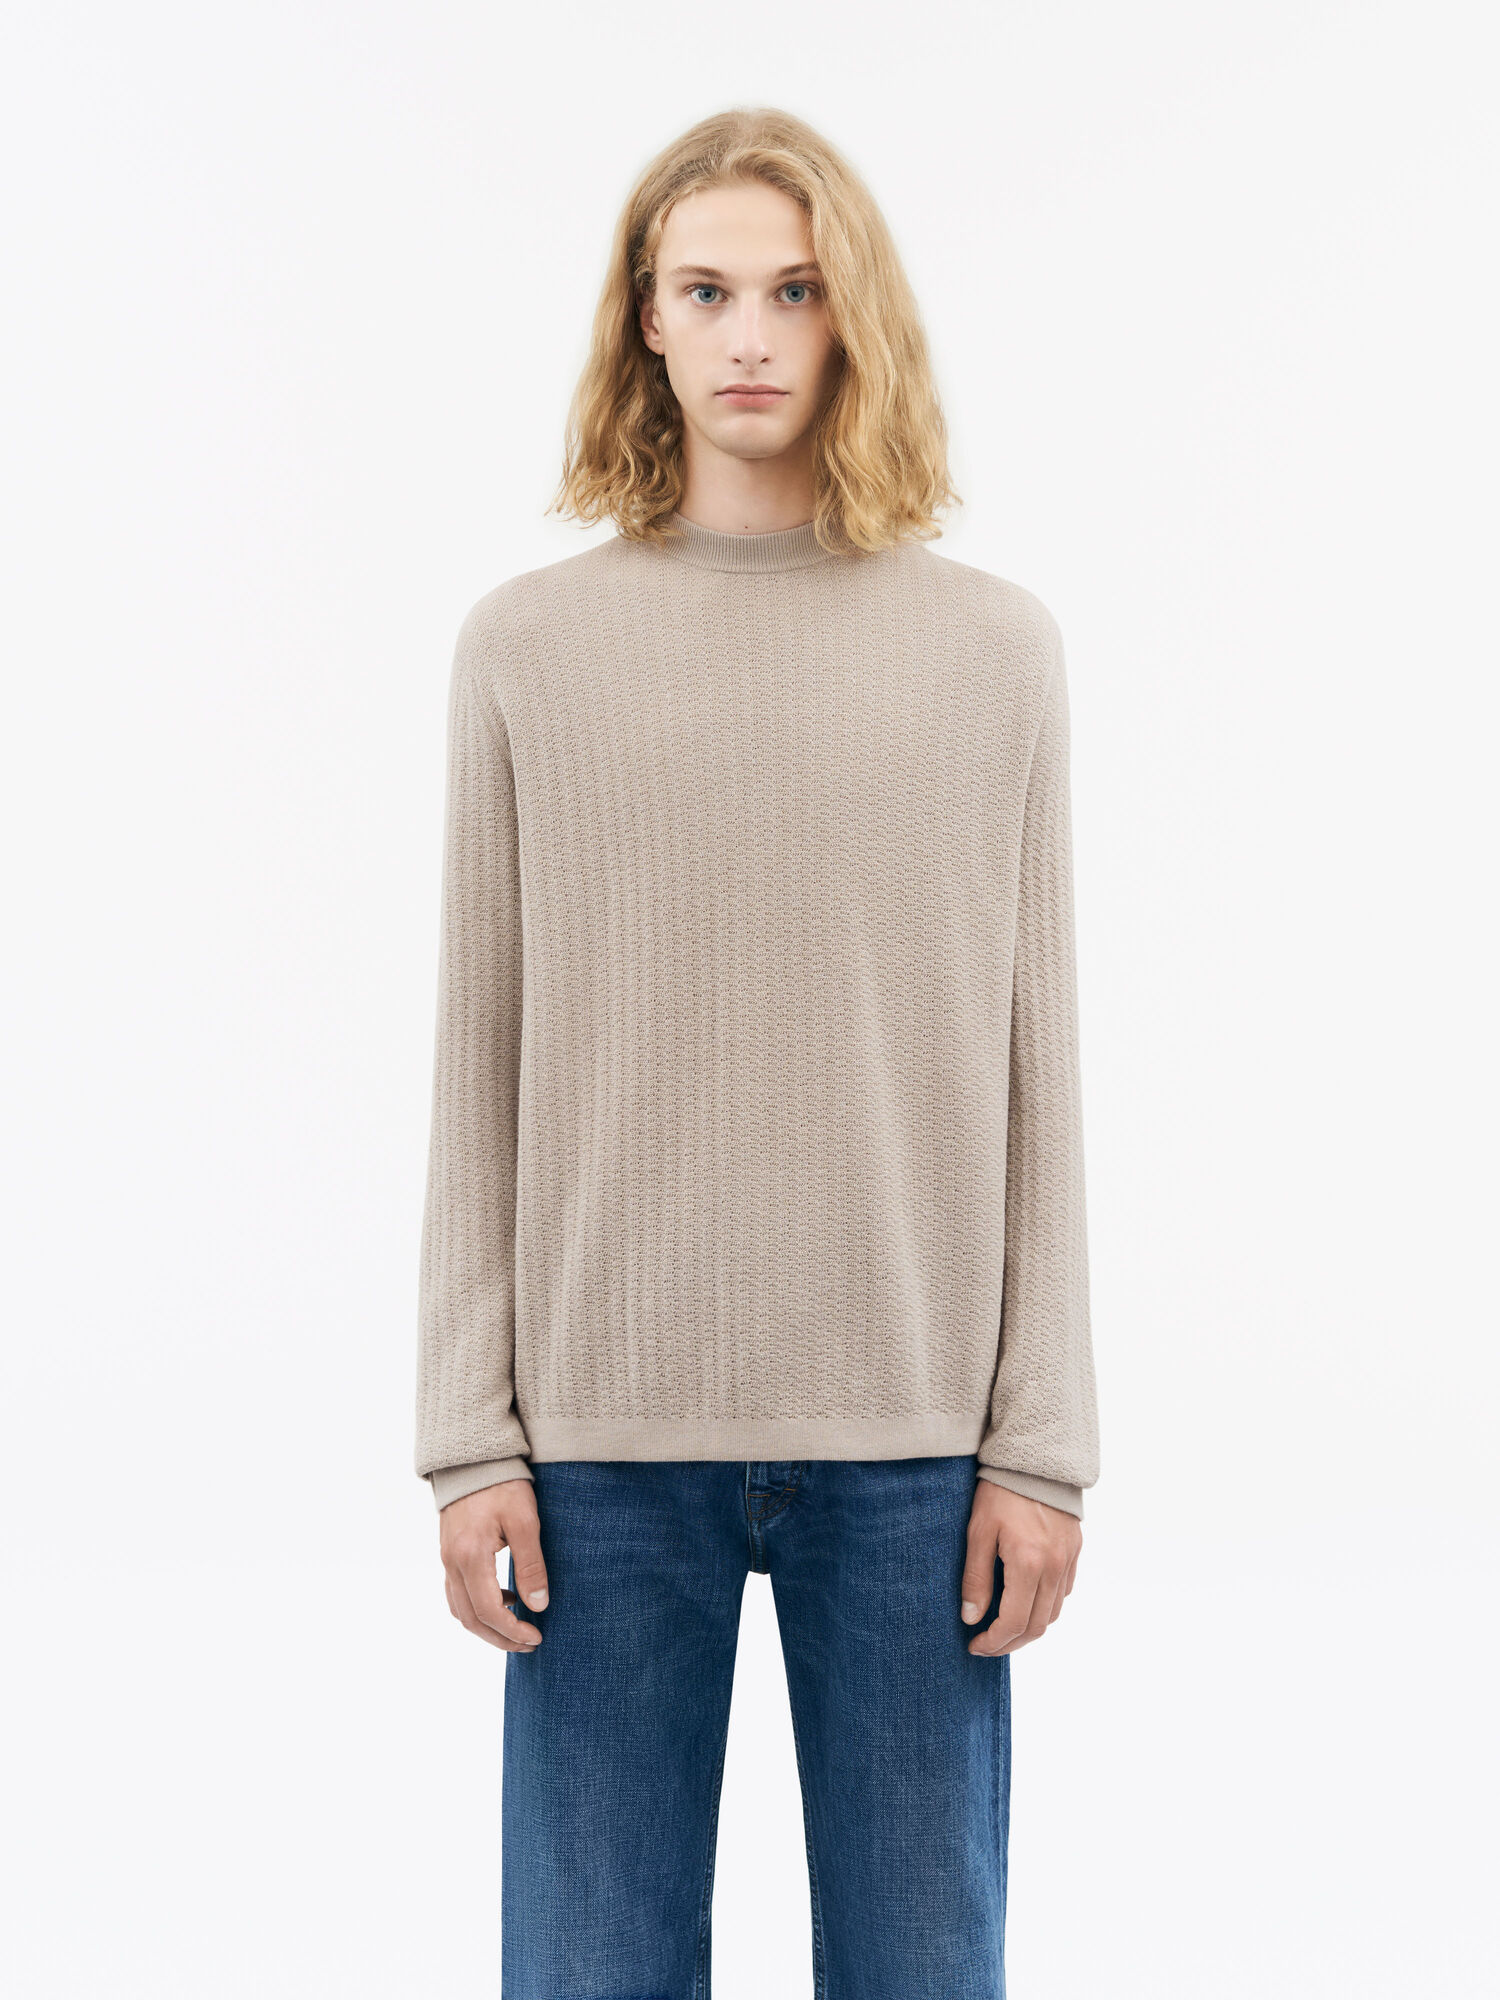 Elssler Sweater